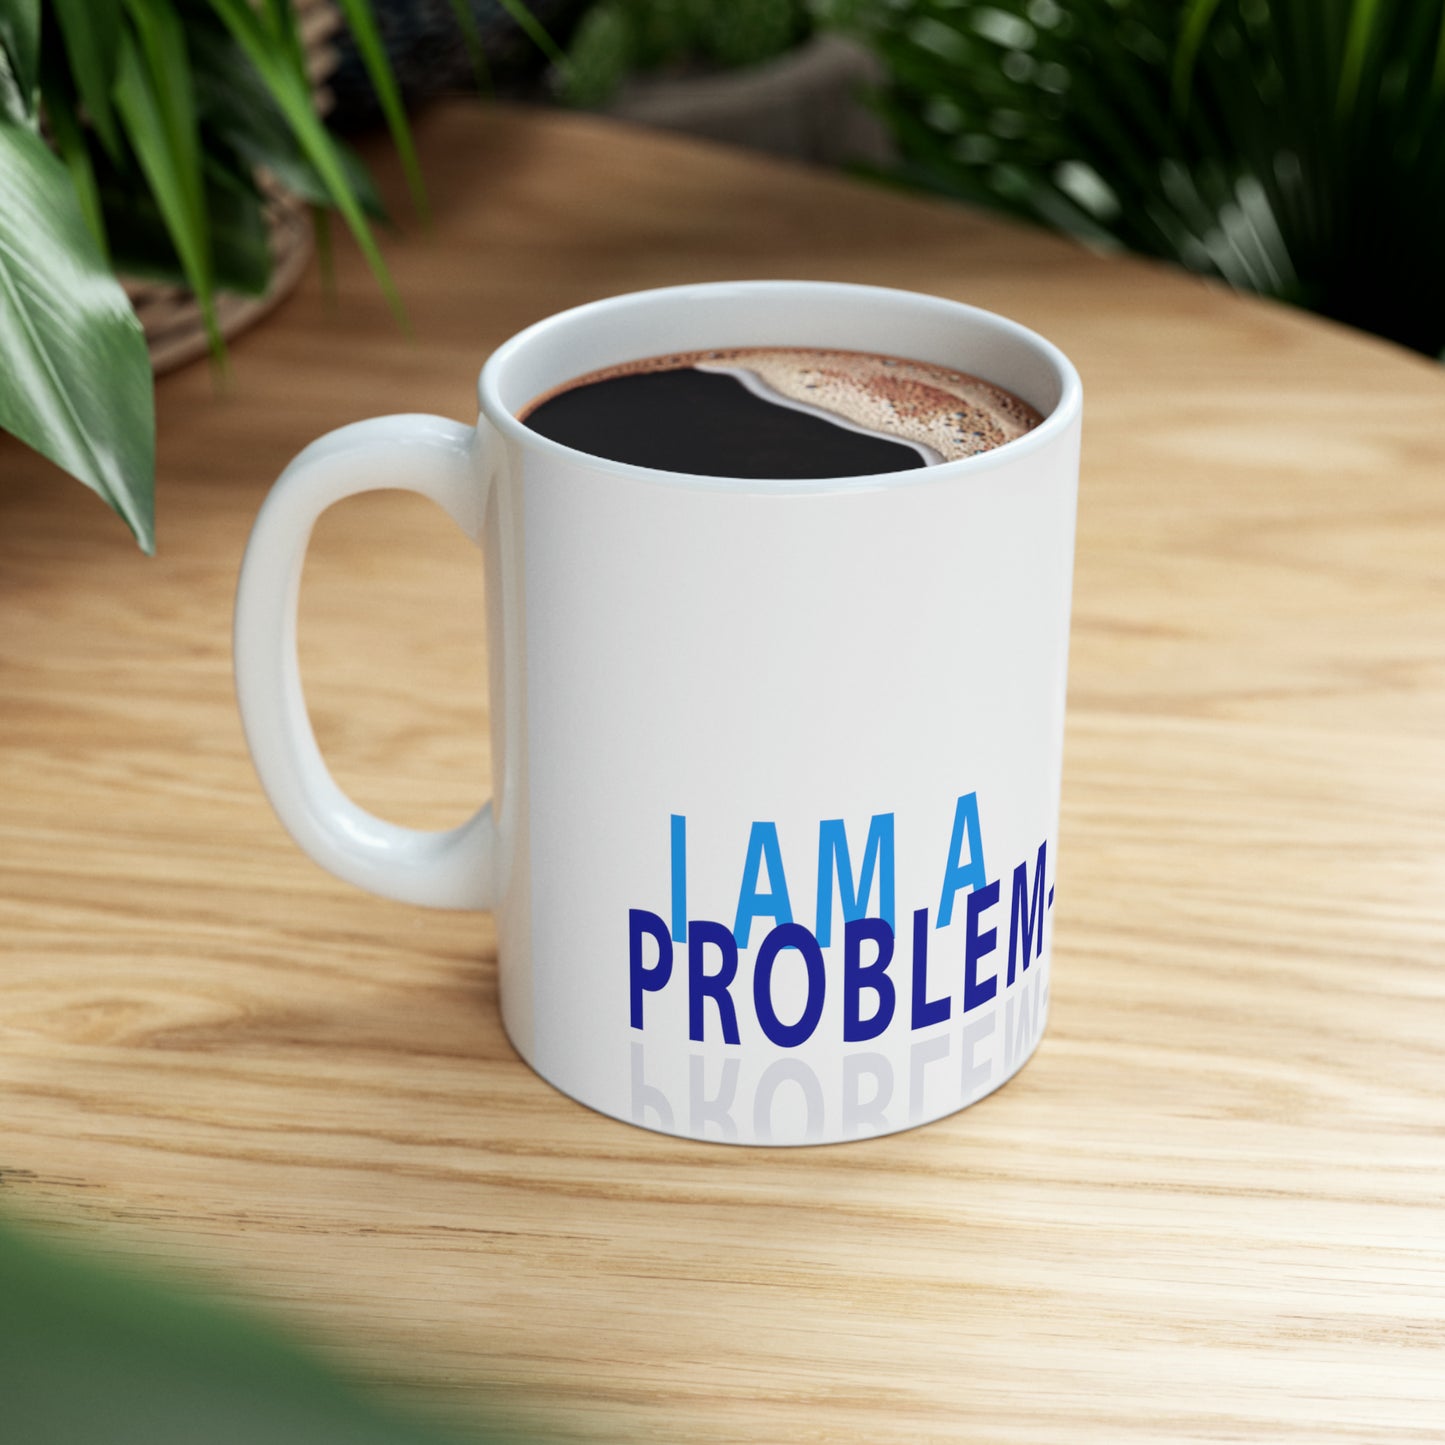 Dr. Flowers' I AM A PROBLEM-SOLVER Ceramic Mug